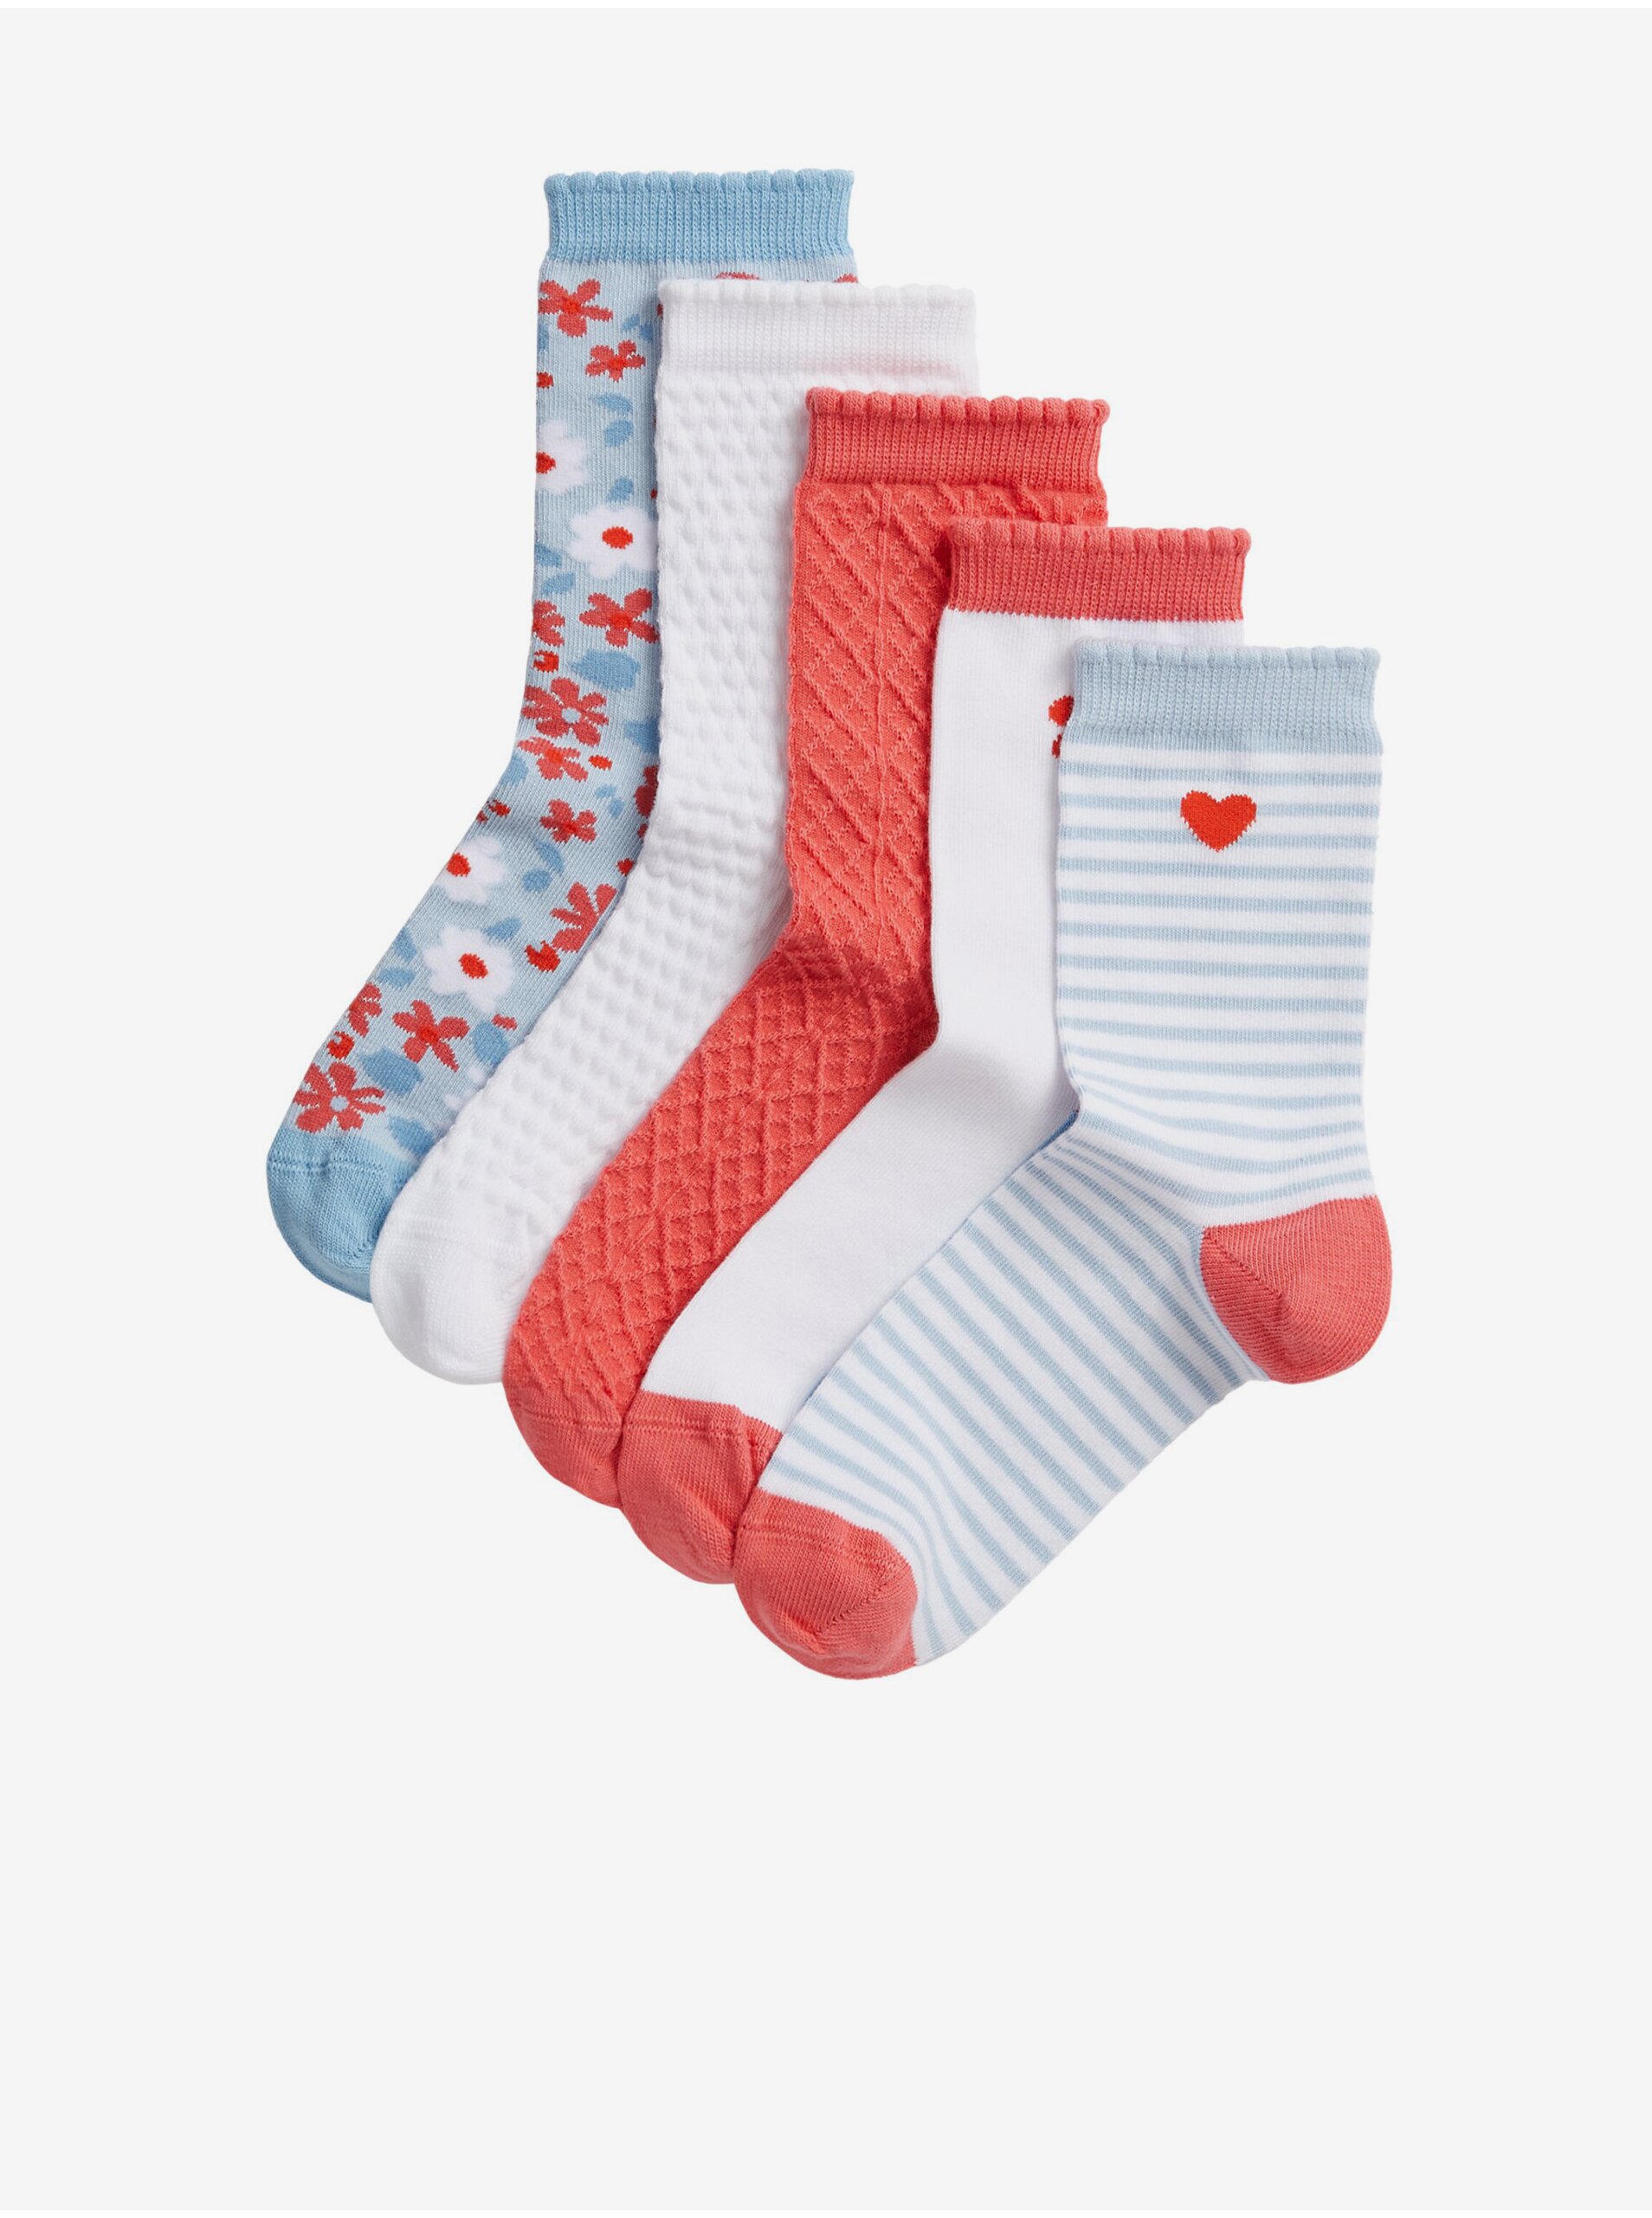 Lacno Súprava piatich párov dievčenských vzorovaných ponožiek v červenej, bielej, šedej a svetlo modrej farbe Marks & Spencer